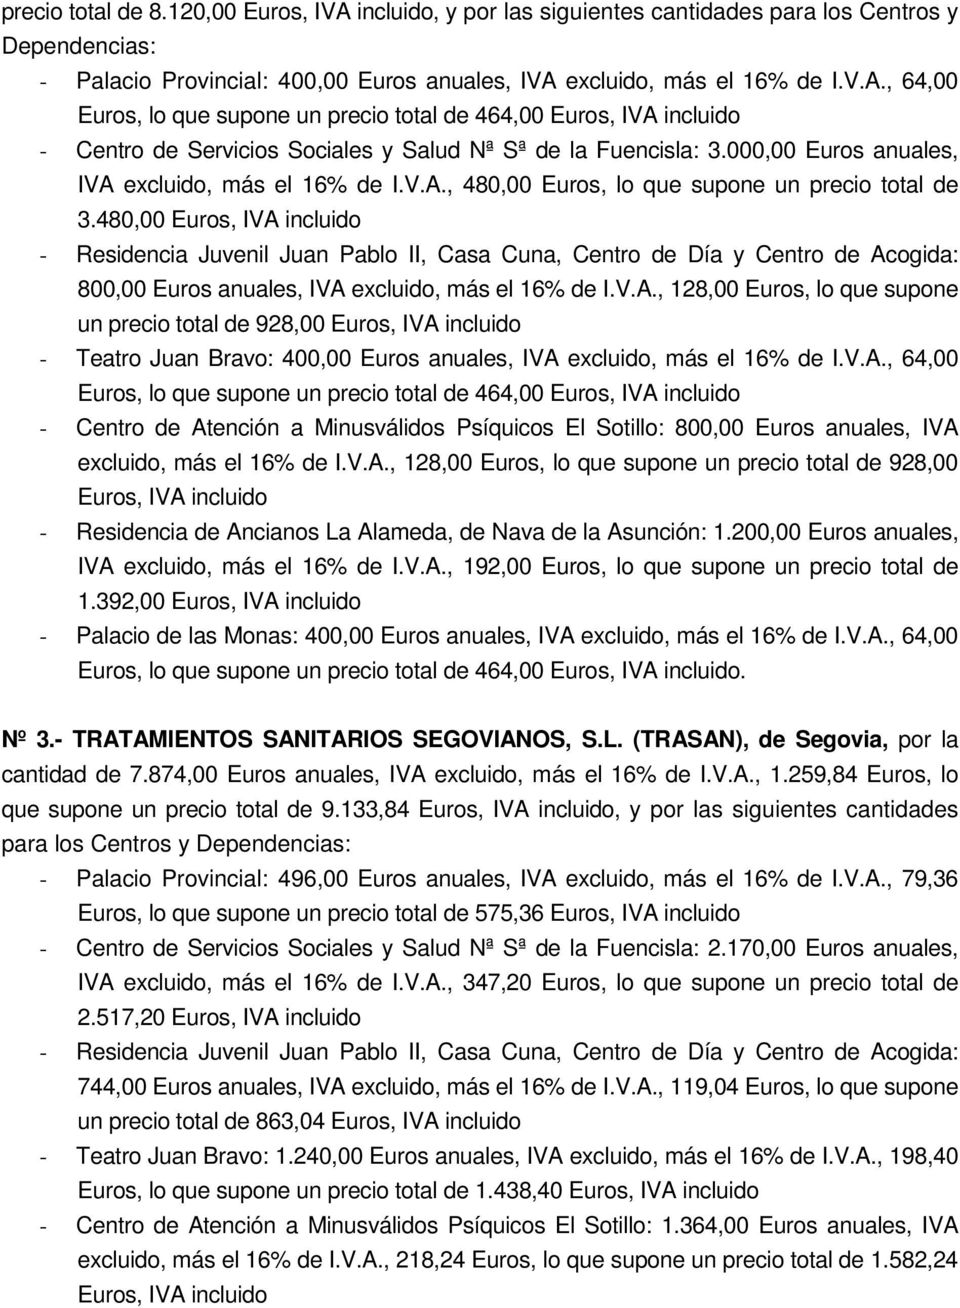 000,00 Euros anuales, IVA excluido, más el 16% de I.V.A., 480,00 Euros, lo que supone un precio total de 3.480,00 800,00 Euros anuales, IVA excluido, más el 16% de I.V.A., 128,00 Euros, lo que supone un precio total de 928,00 - Teatro Juan Bravo: 400,00 Euros anuales, IVA excluido, más el 16% de I.